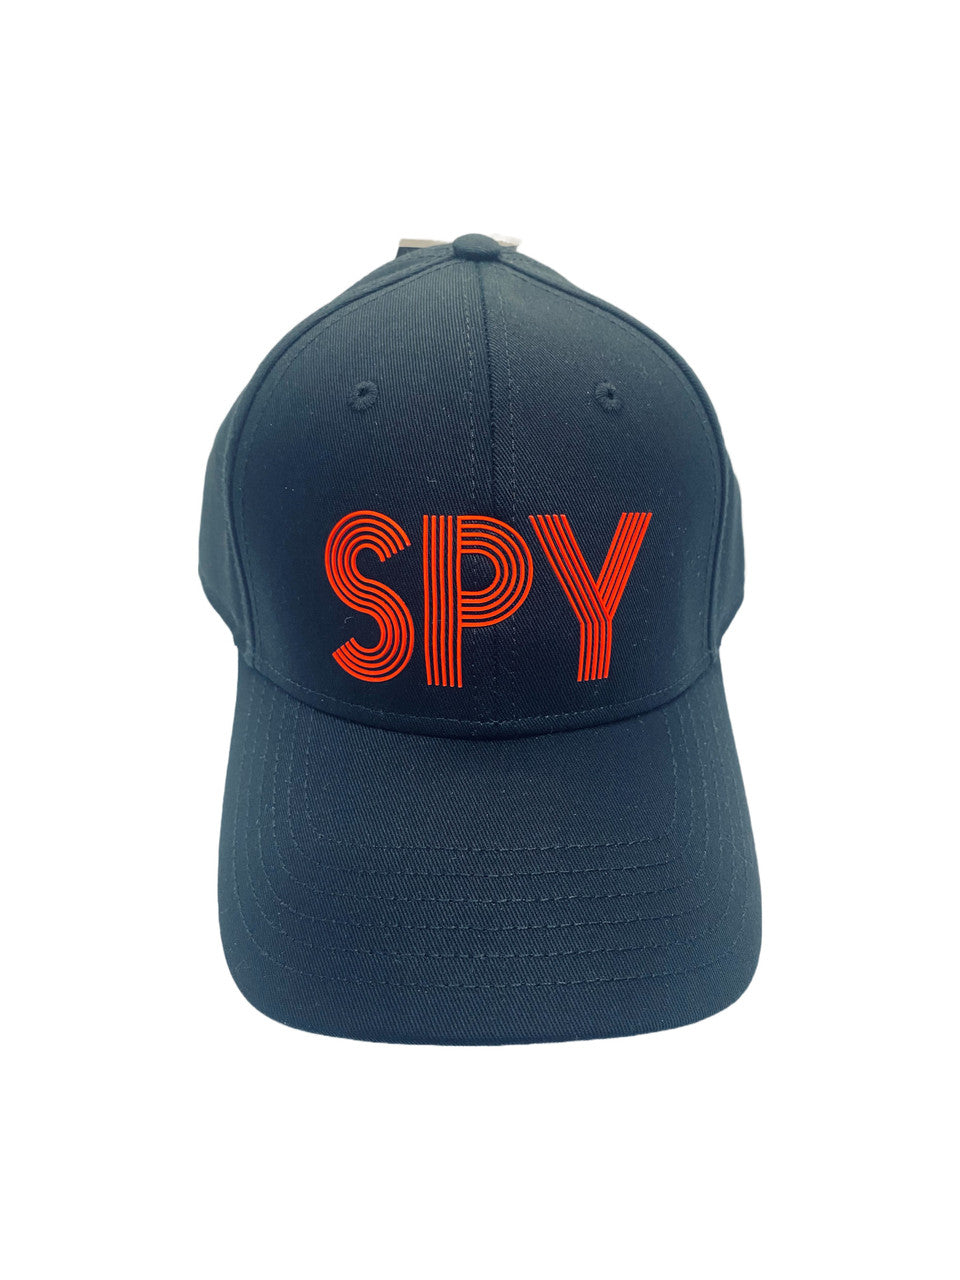 SPY Raised Letters Hat